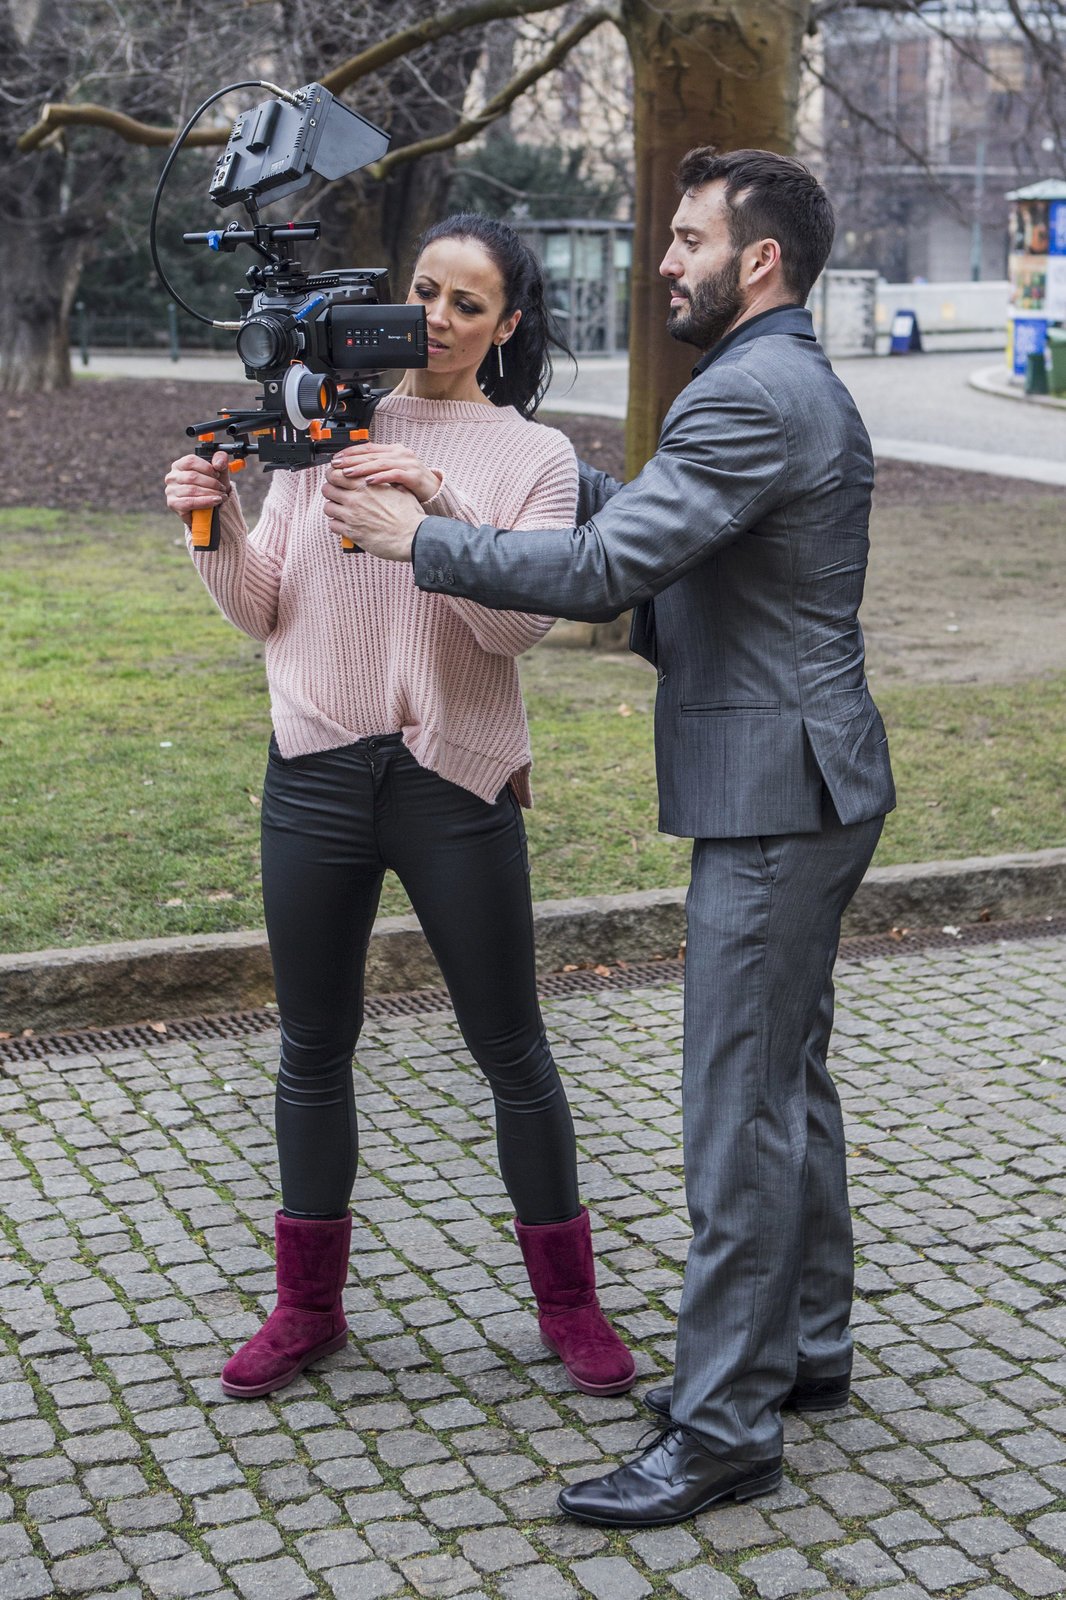 Václav Noid Bárta hned zaměstnal svou novou milenku Elišku při natáčení videoklipu.